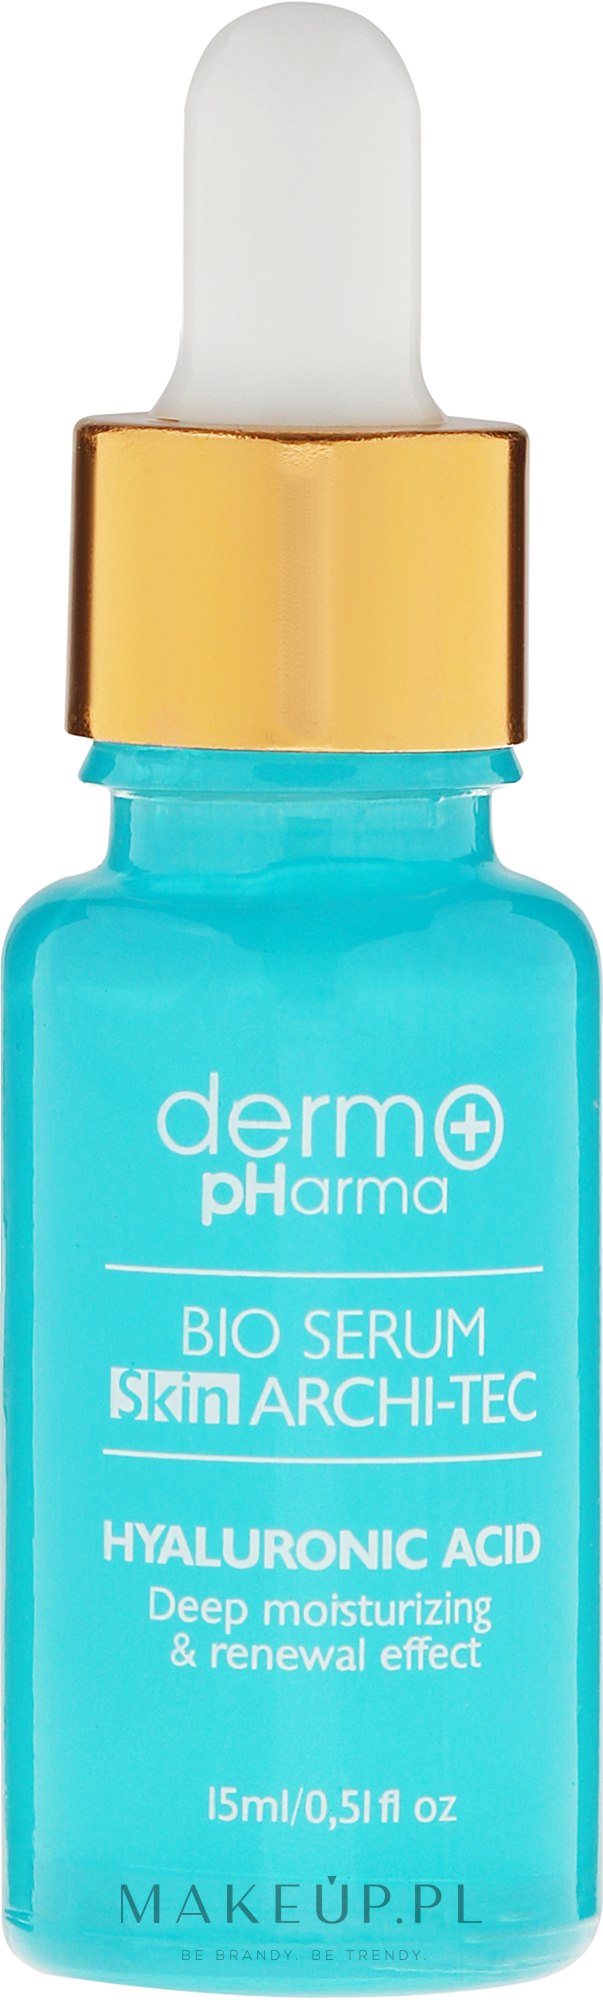 Serum na twarz, szyję, dekolt i dłonie Kwas hialuronowy - Dermo Pharma Bio Serum Skin Archi-Tec Hyaluronic Acid — Zdjęcie 15 ml